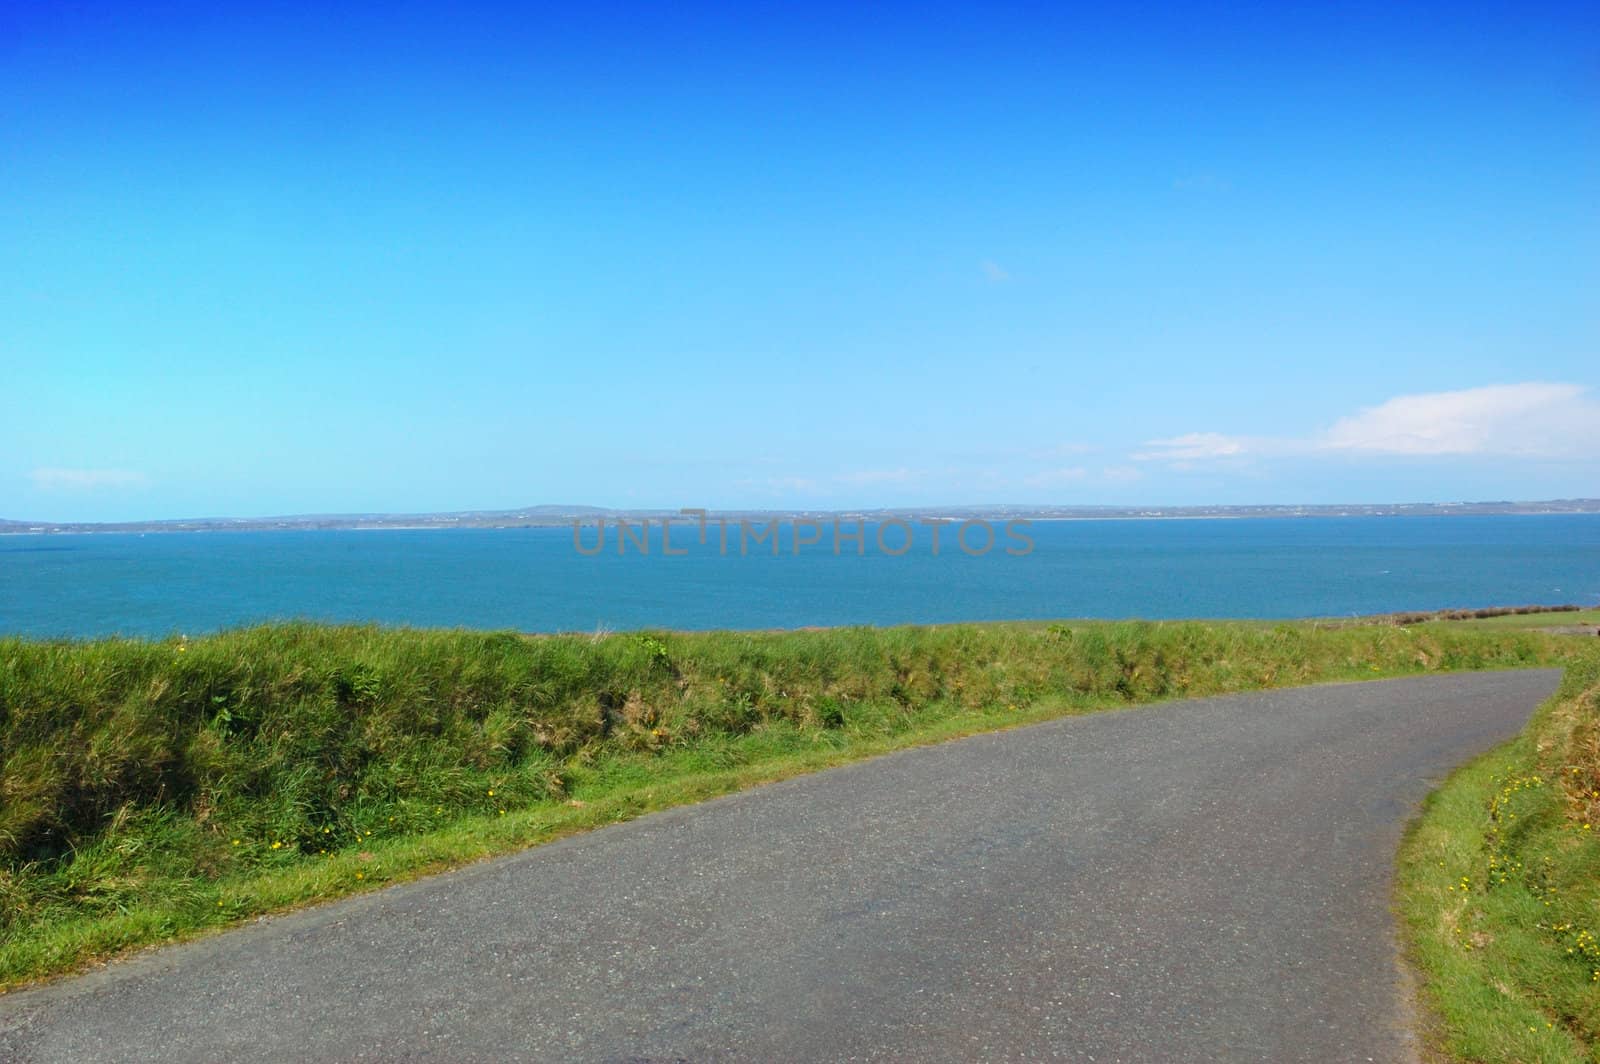 Irish Rural Road in Kerry by maggiemolloy